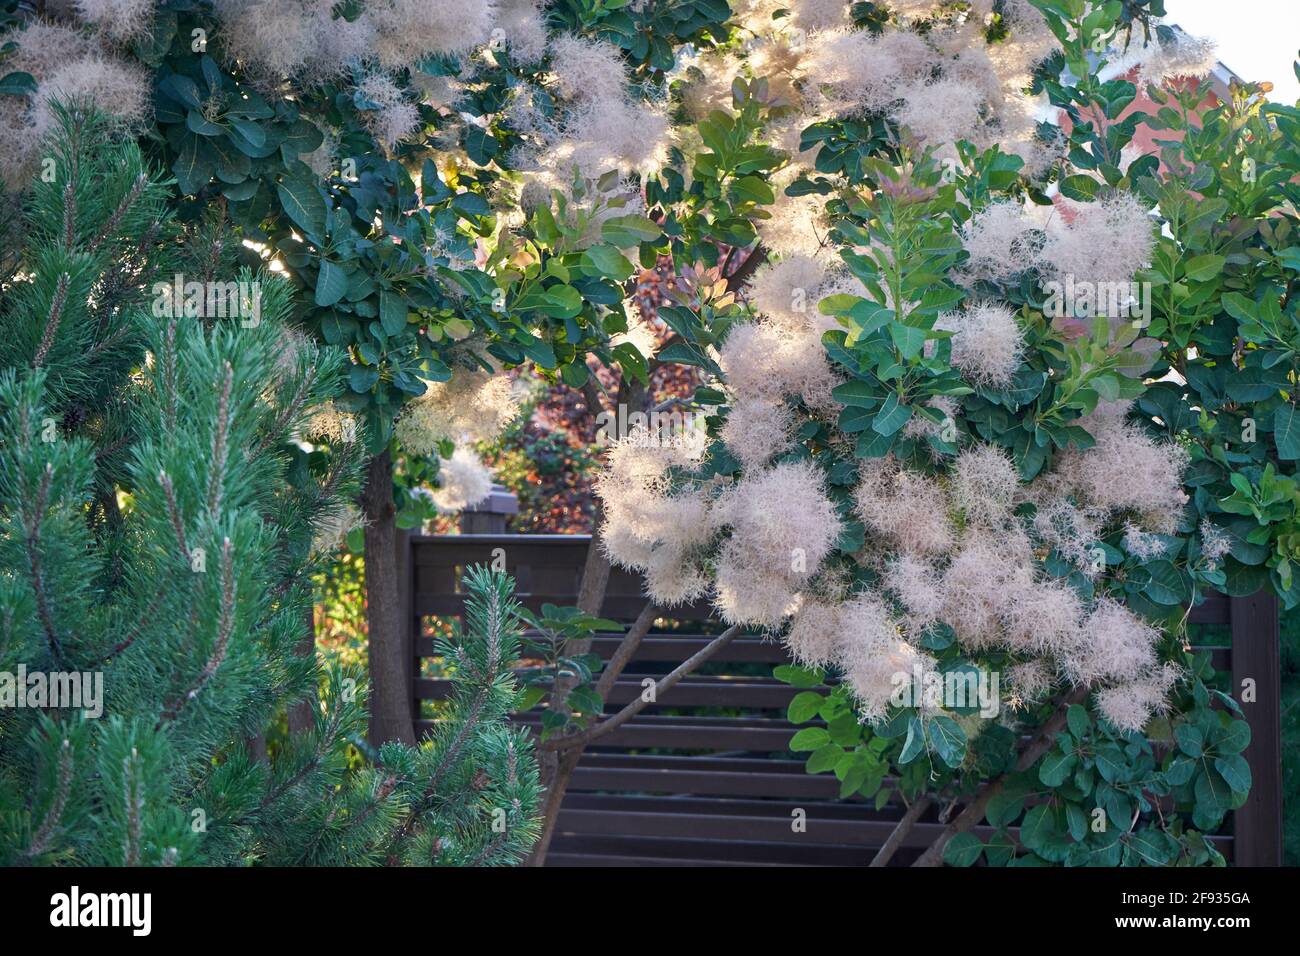 Arbuste Scompia cotinus avec des branches moelleuses dans le jardin de la maison Banque D'Images